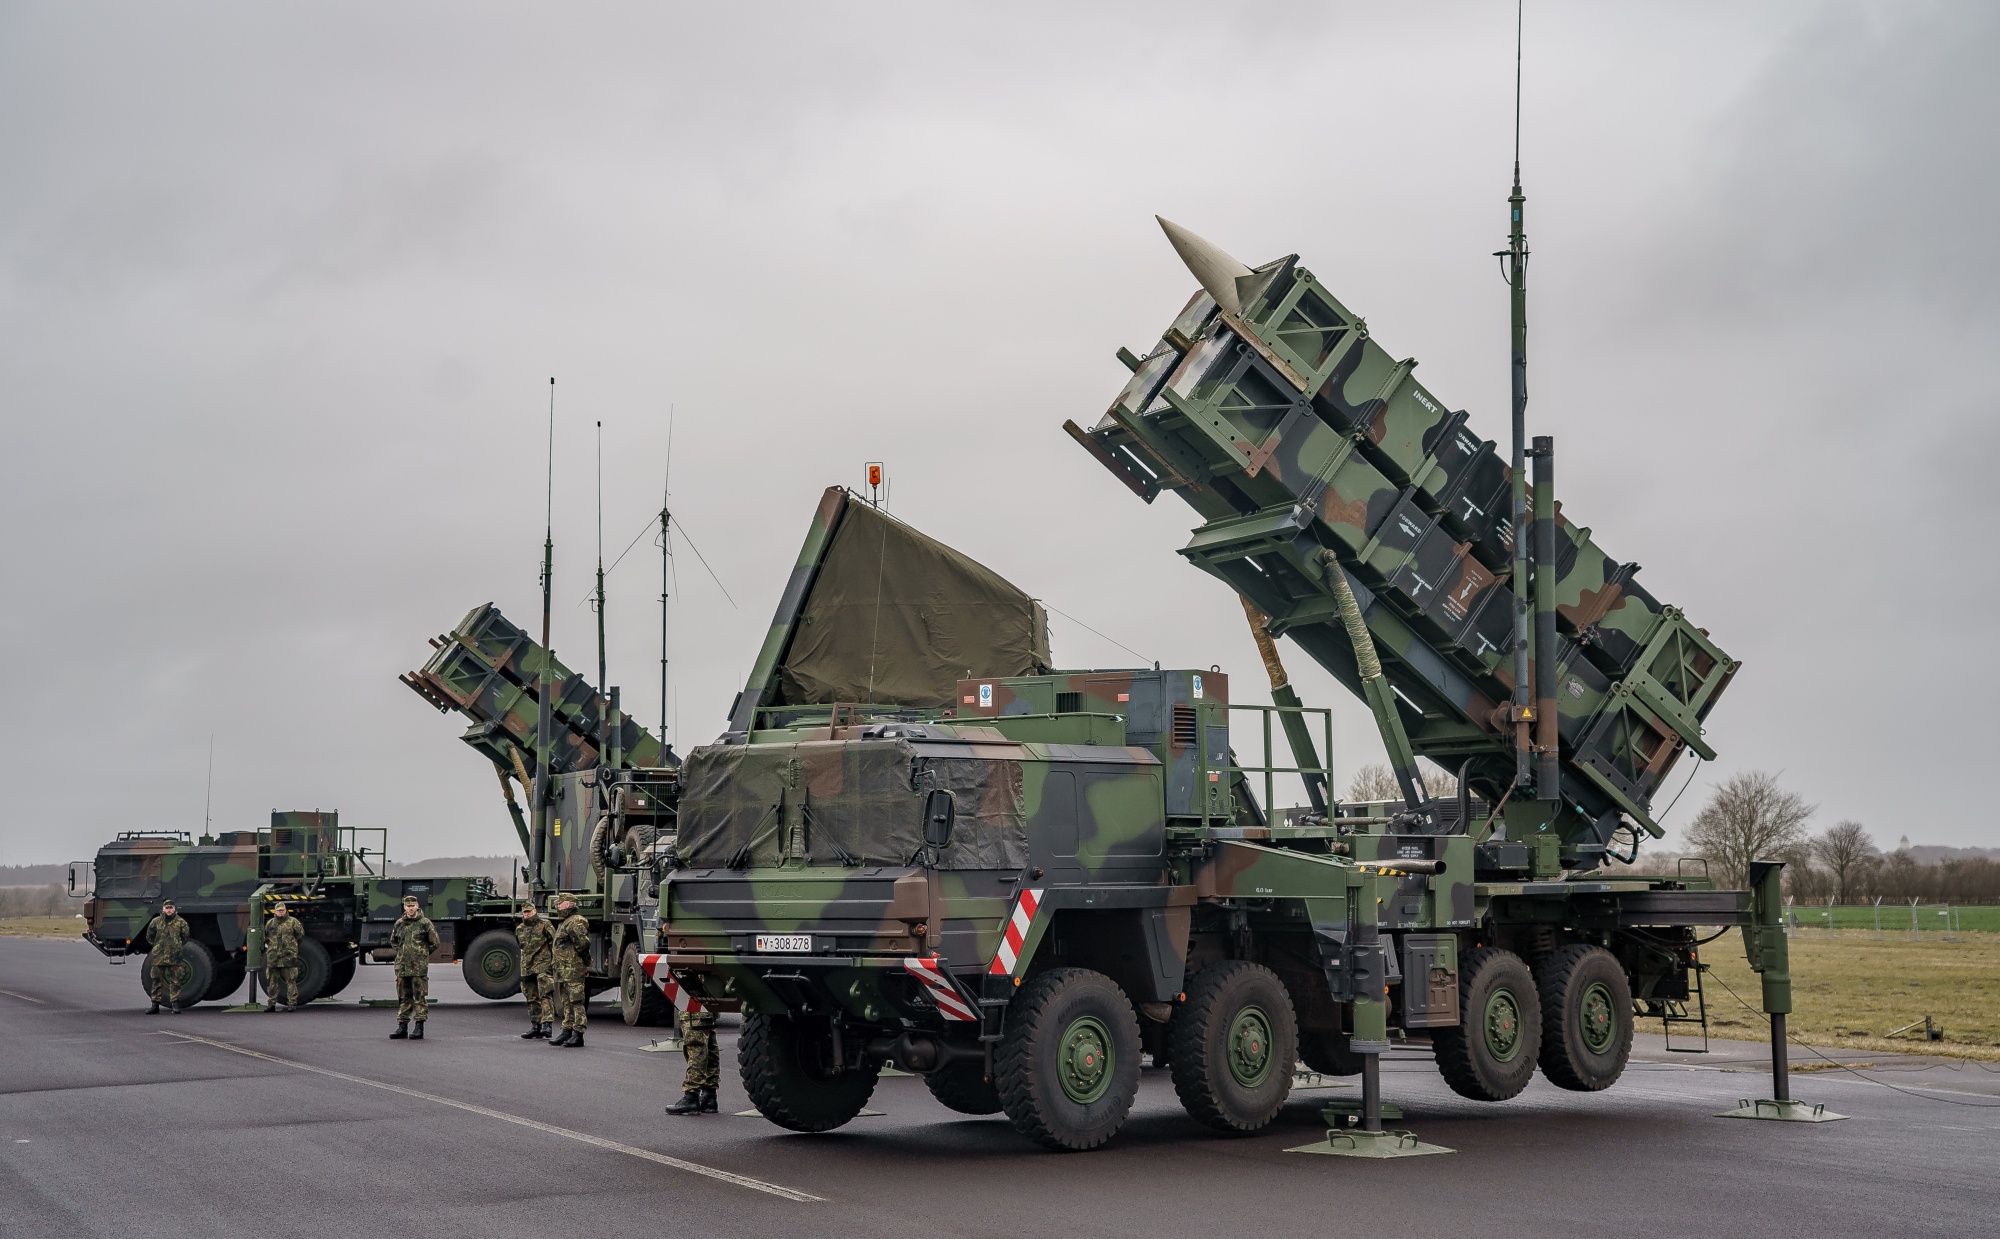 For første gang i historien er Warszawa beskyttet av et missilforsvarssystem - Polen utplasserer Patriot bakke-til-luft-missilsystemer